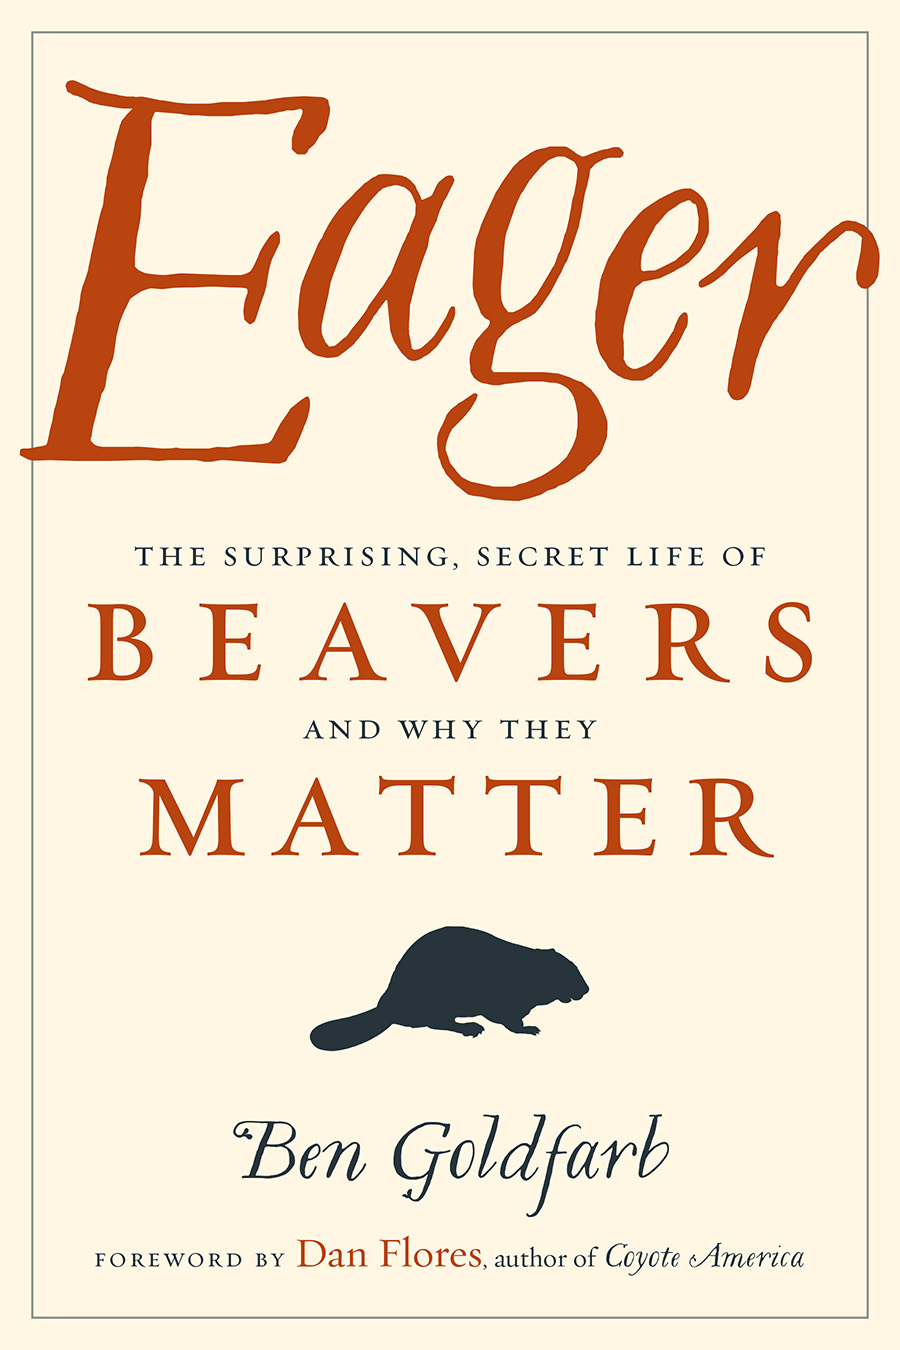 eager beaver